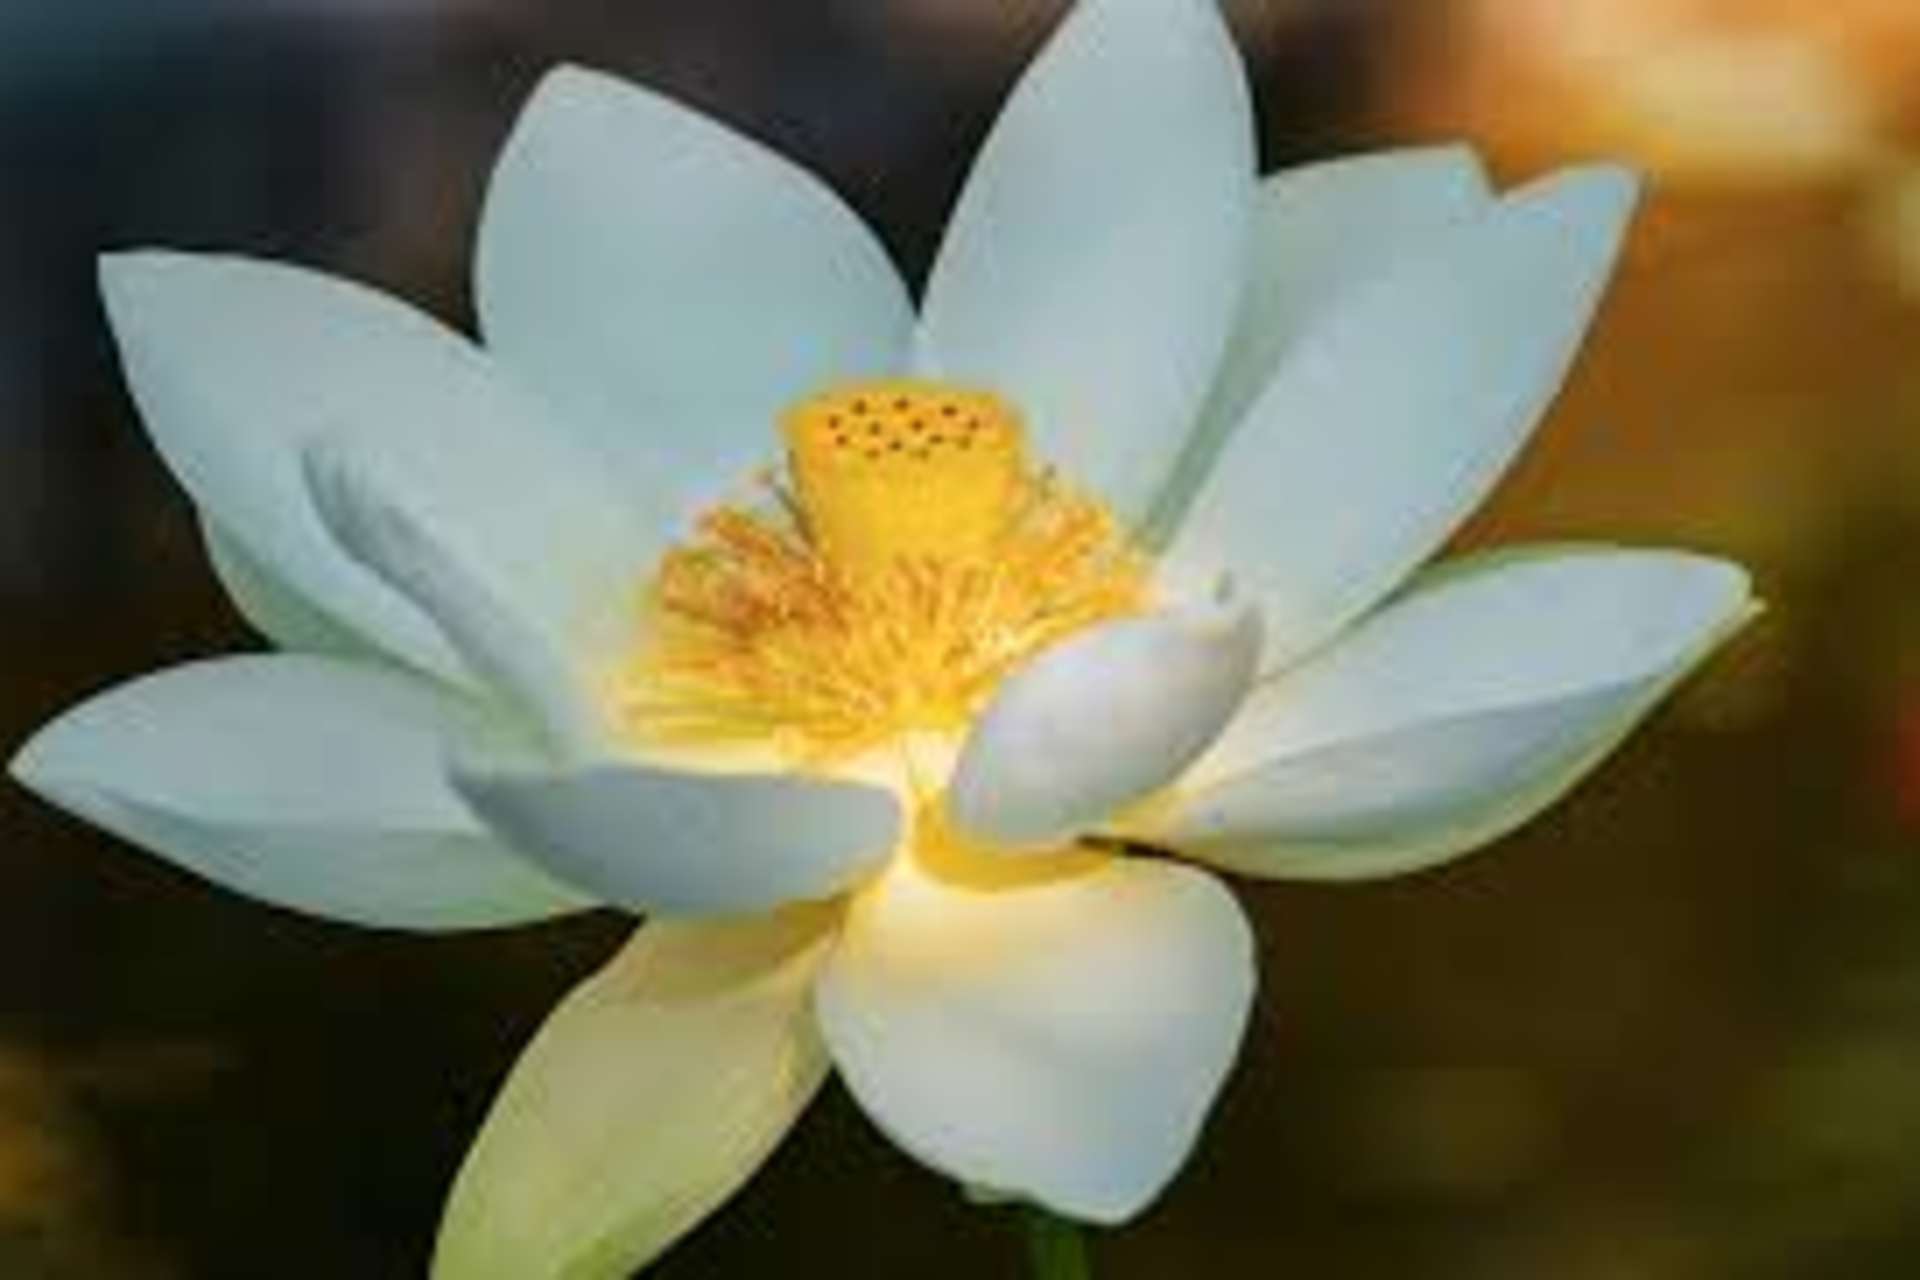 Atelier Bien-être organisé par l'Association Lotus Blanc